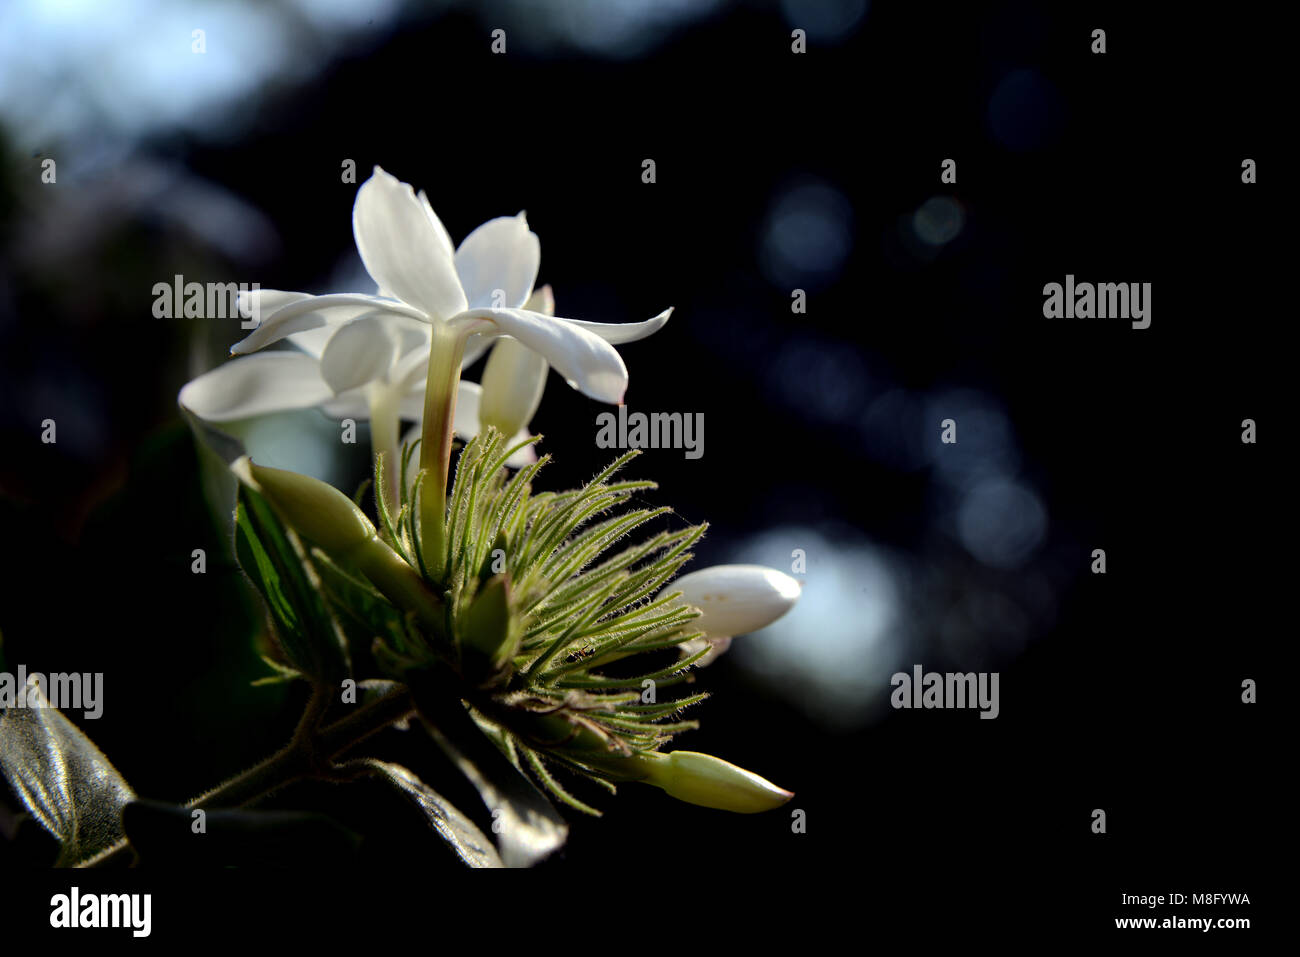 White Jasmine flower closeup in a garden with dark natural background Stock Photo